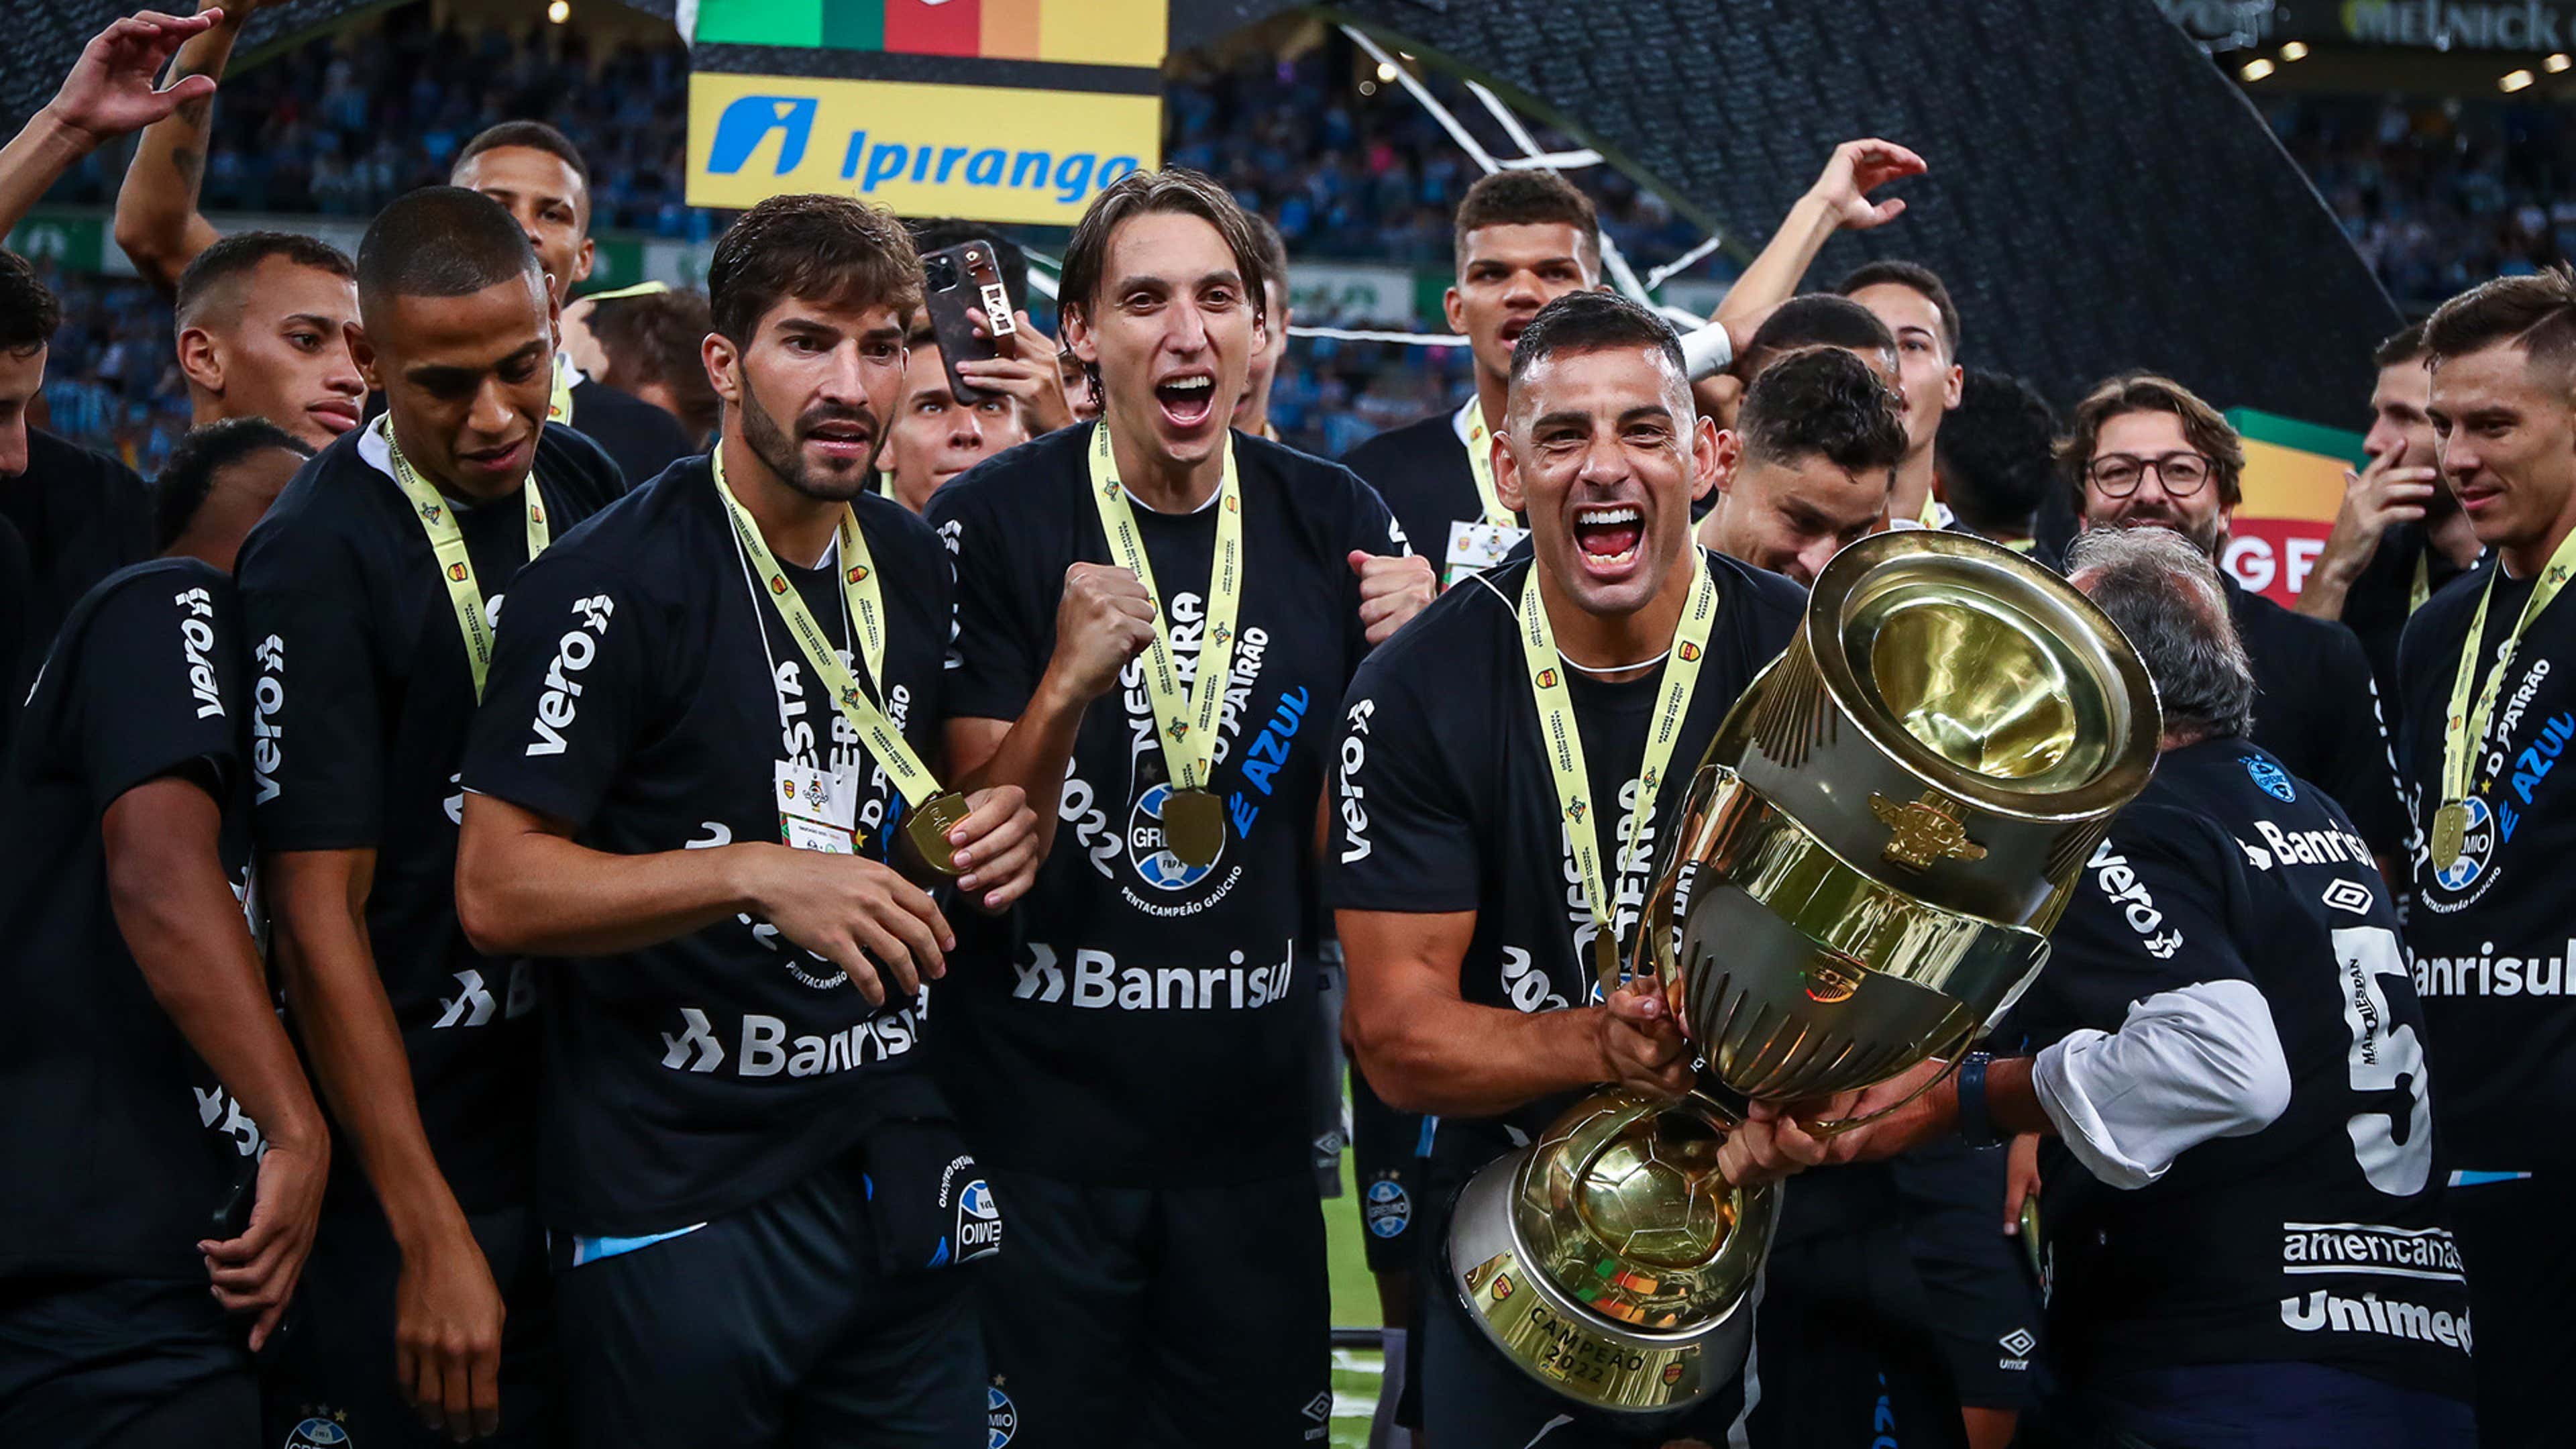 40 curiosidades sobre a conquista do Grêmio no Mundial de Clubes